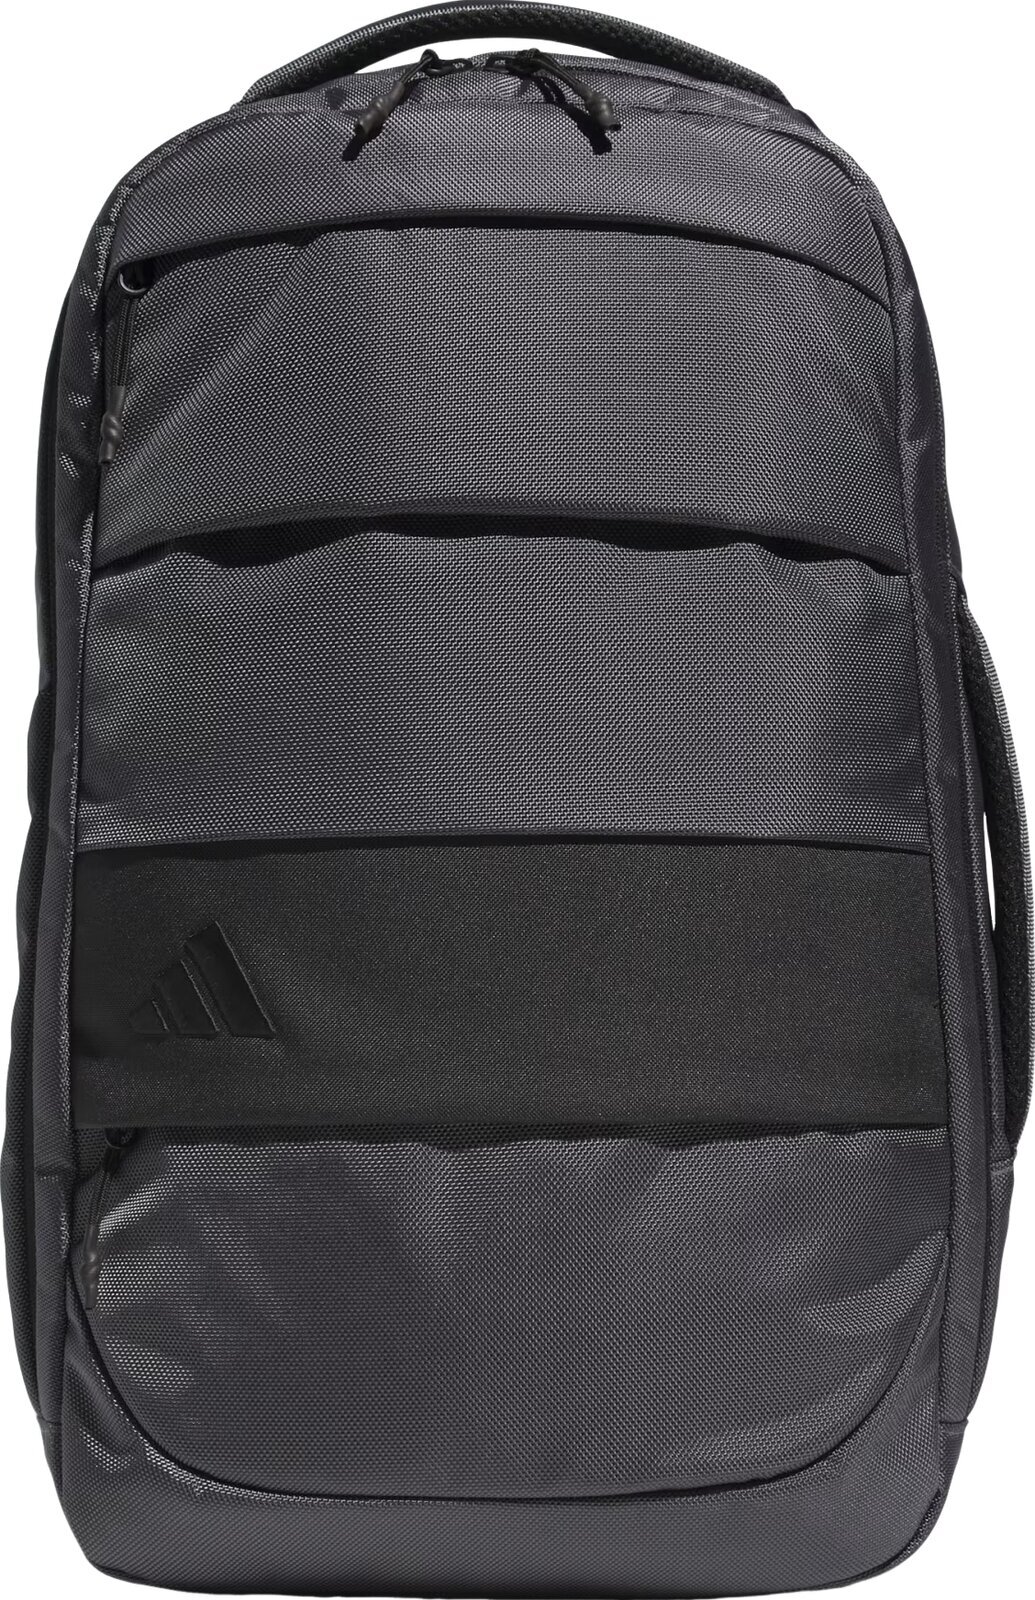 Lifestyle nahrbtnik / Torba Adidas Hybrid Backpack Grey 28,20 L Nahrbtnik